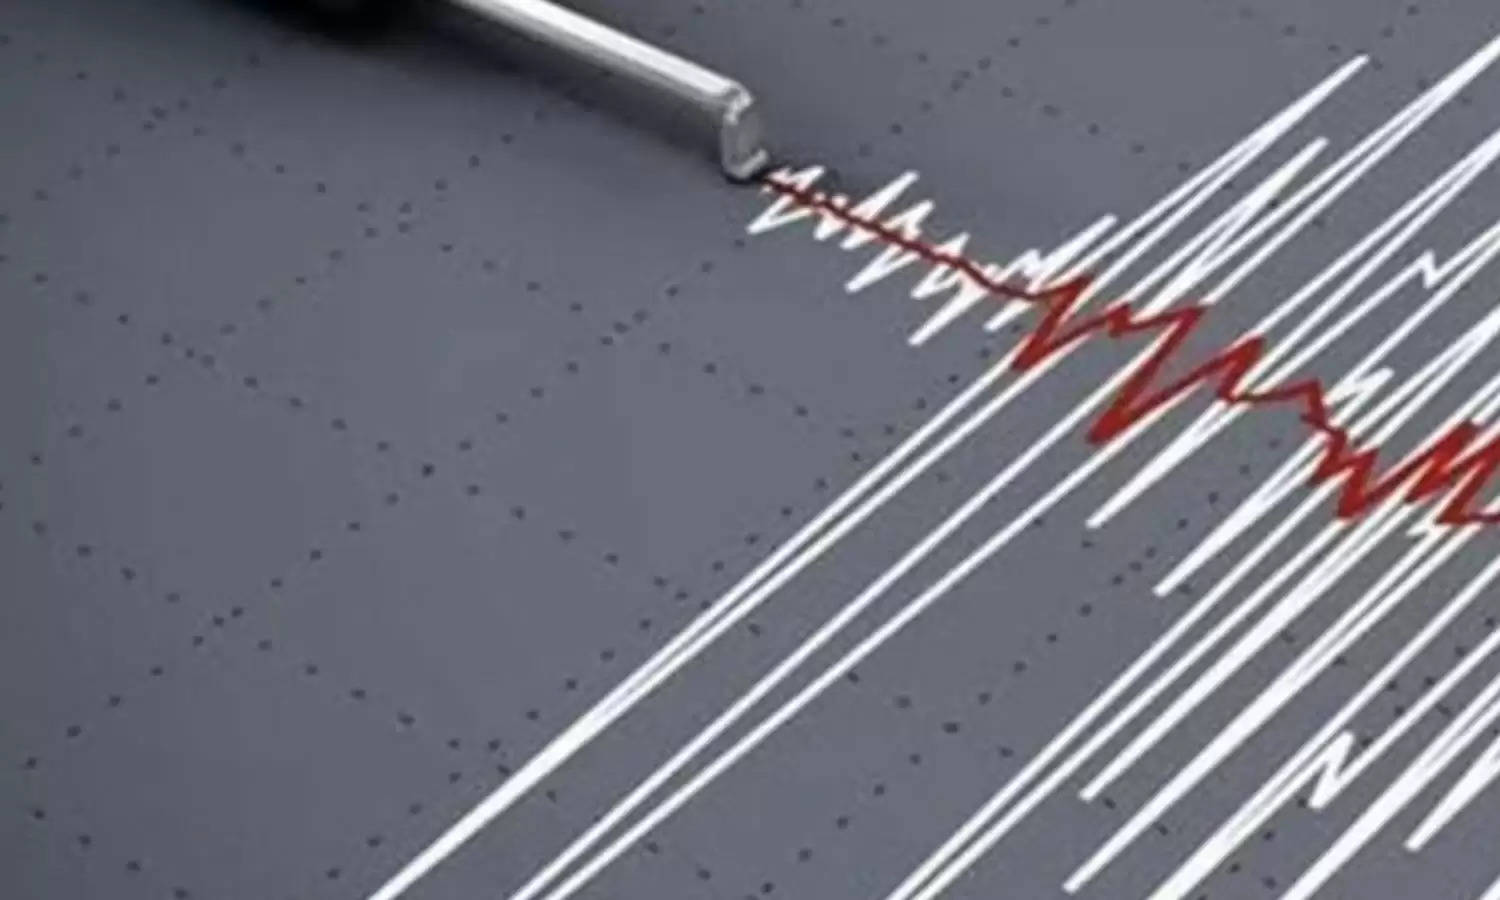 Earthquake : पापुआ न्यू गिनी में भूकंप से हड़कंप, 7.7 की तीव्रता से कांपी धरती